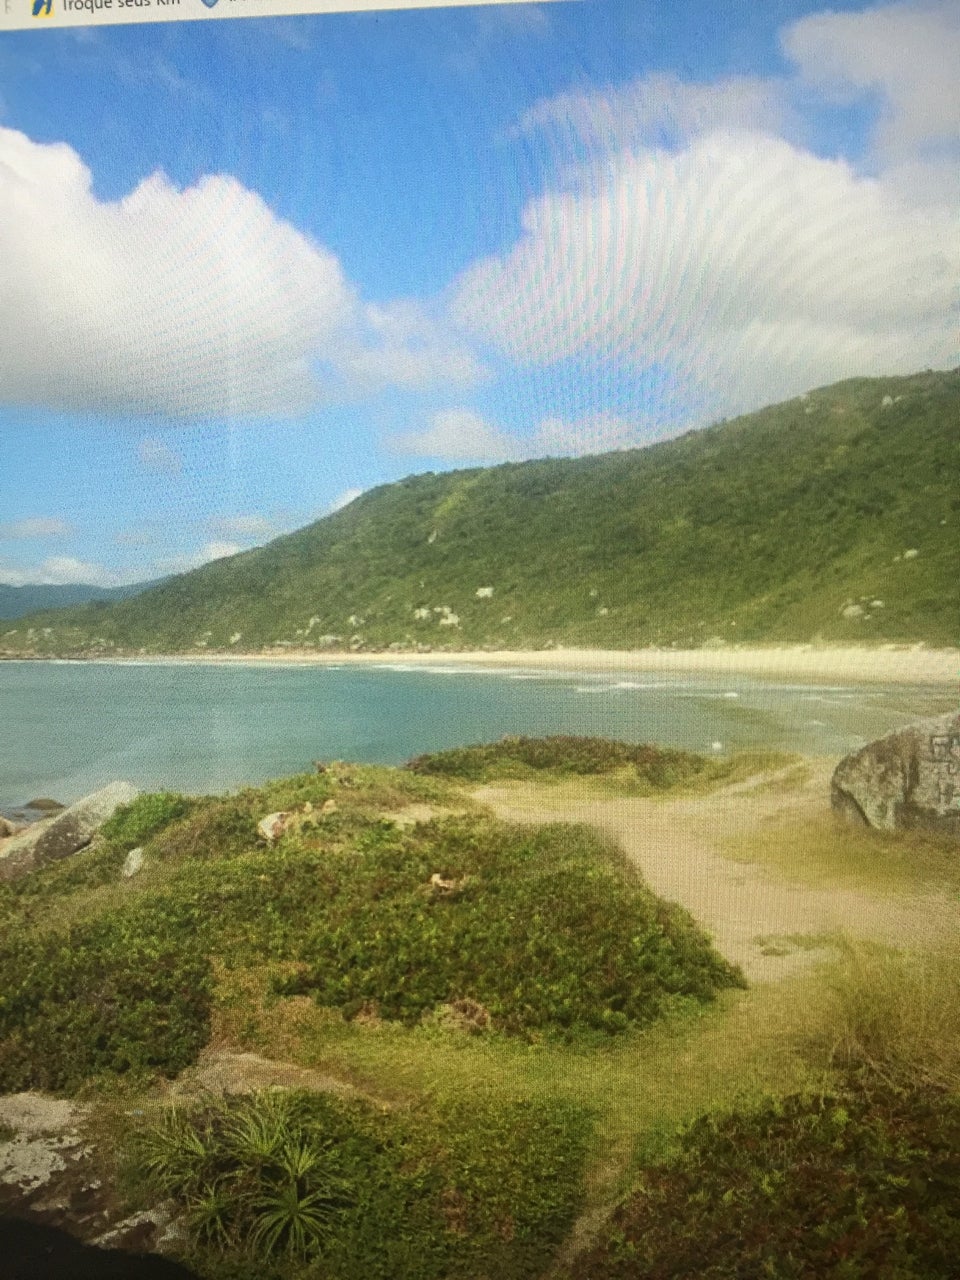 Photo of Praia Galheta